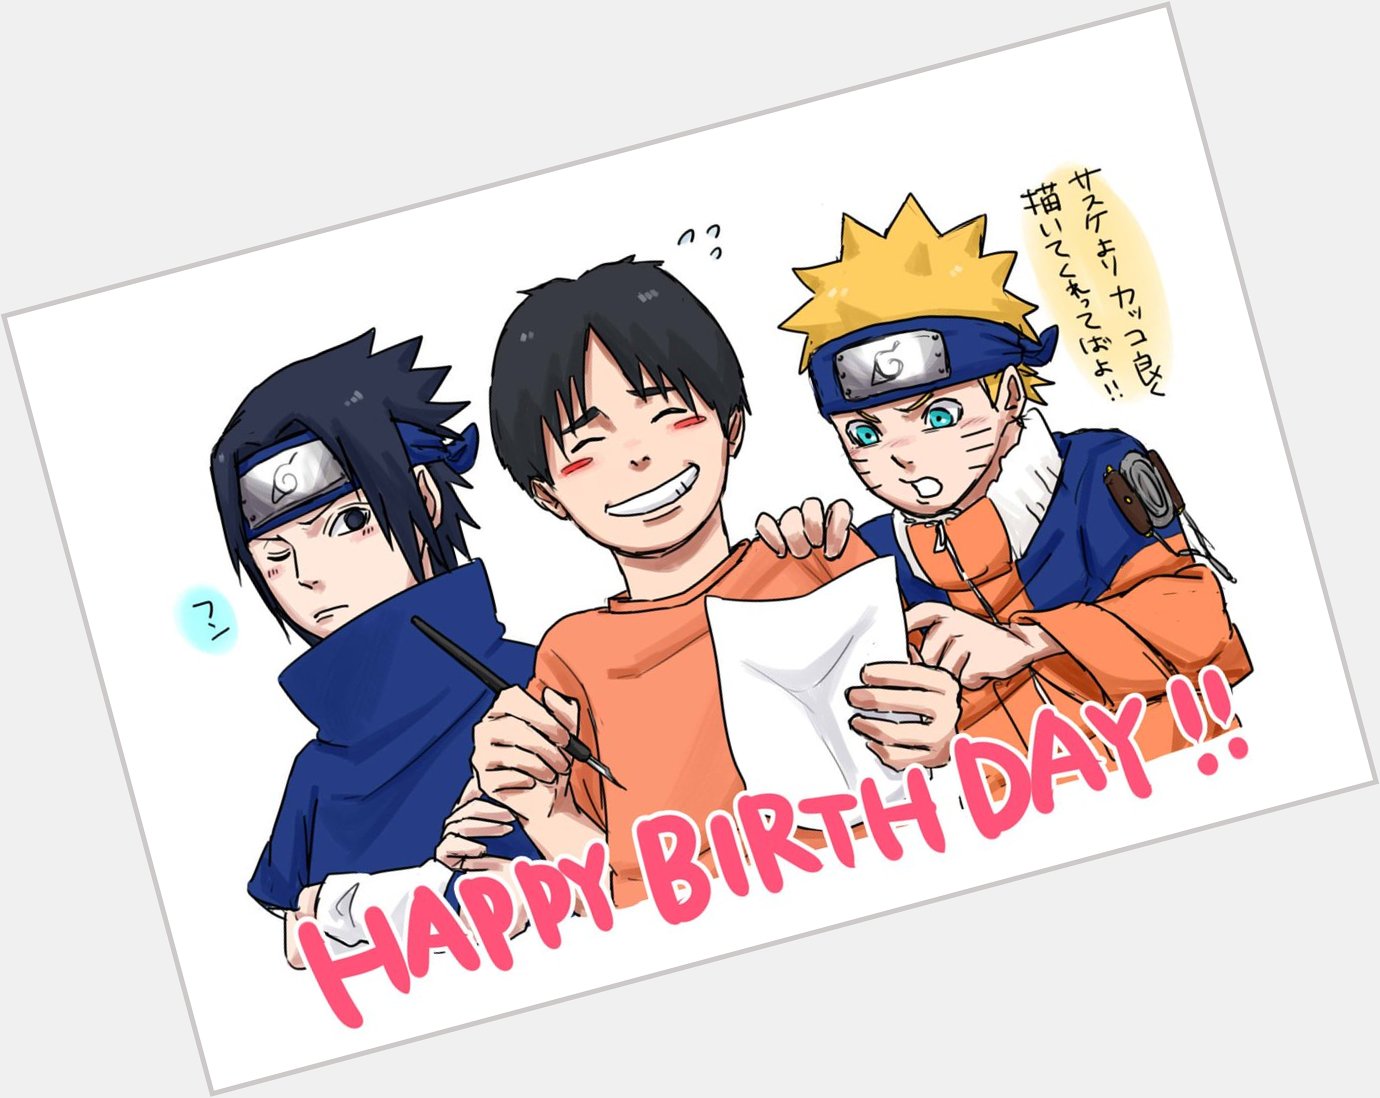 Hoy es el cumpleaños de Masashi Kishimoto, autor de Naruto.

HAPPY BIRTHDAY KISHIMOTO-SENSEI!! 